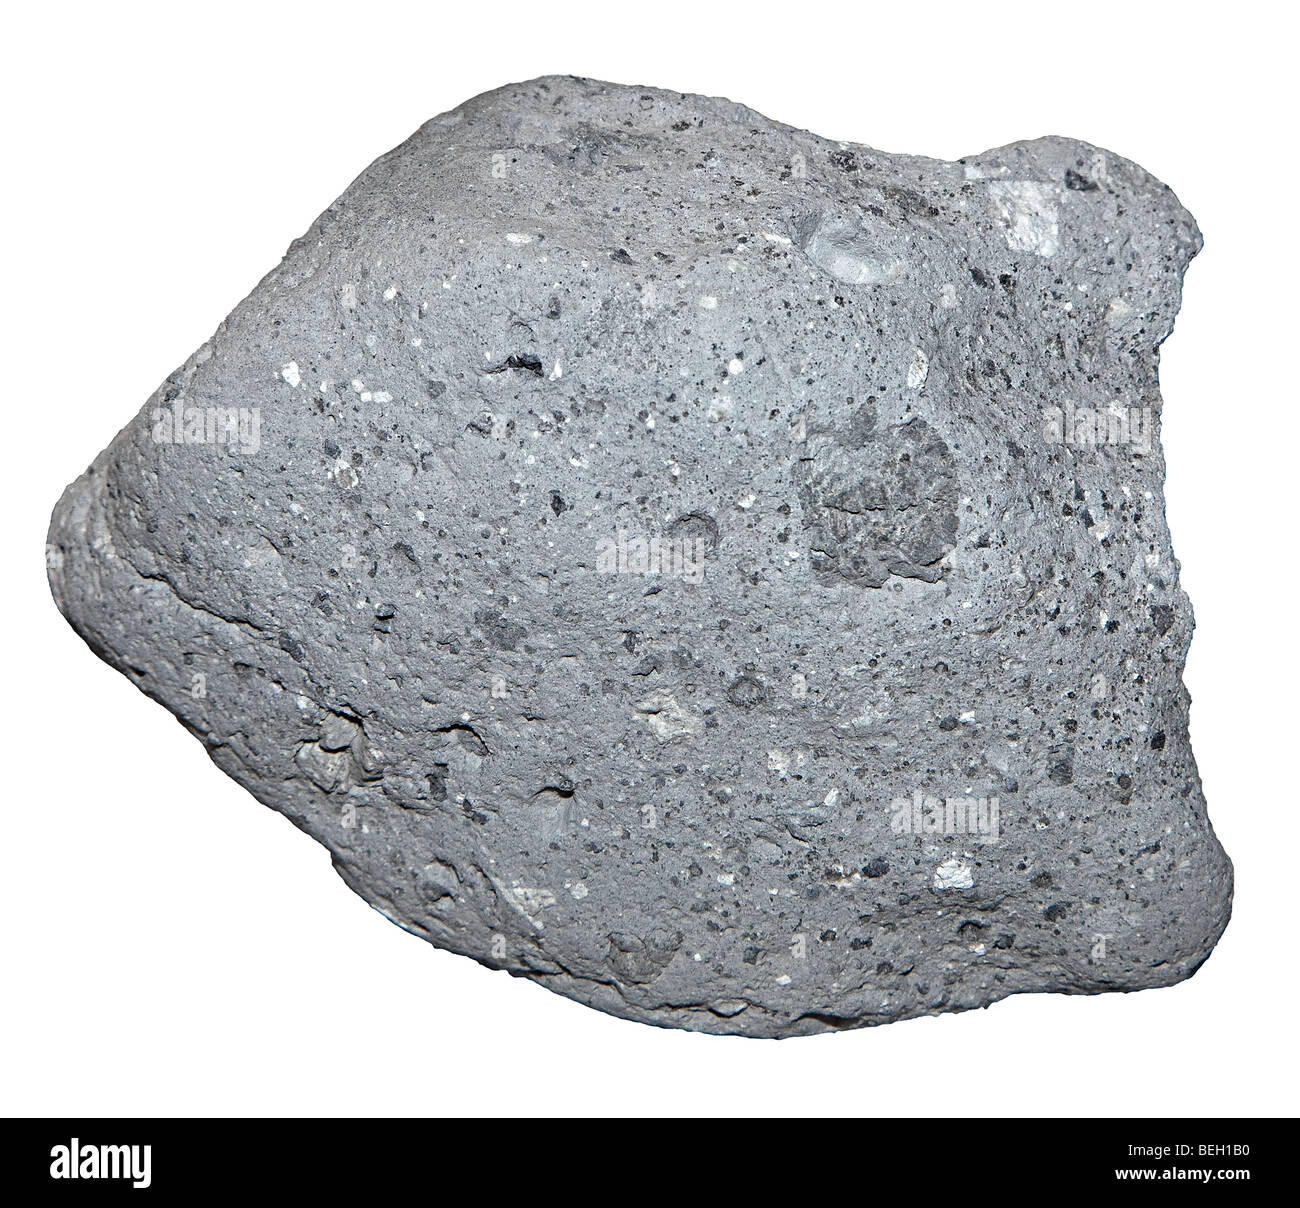 Breccia moon rock sample from the Descartes Highlands on the Moon NASA Space Center Houston Texas USA Stock Photo